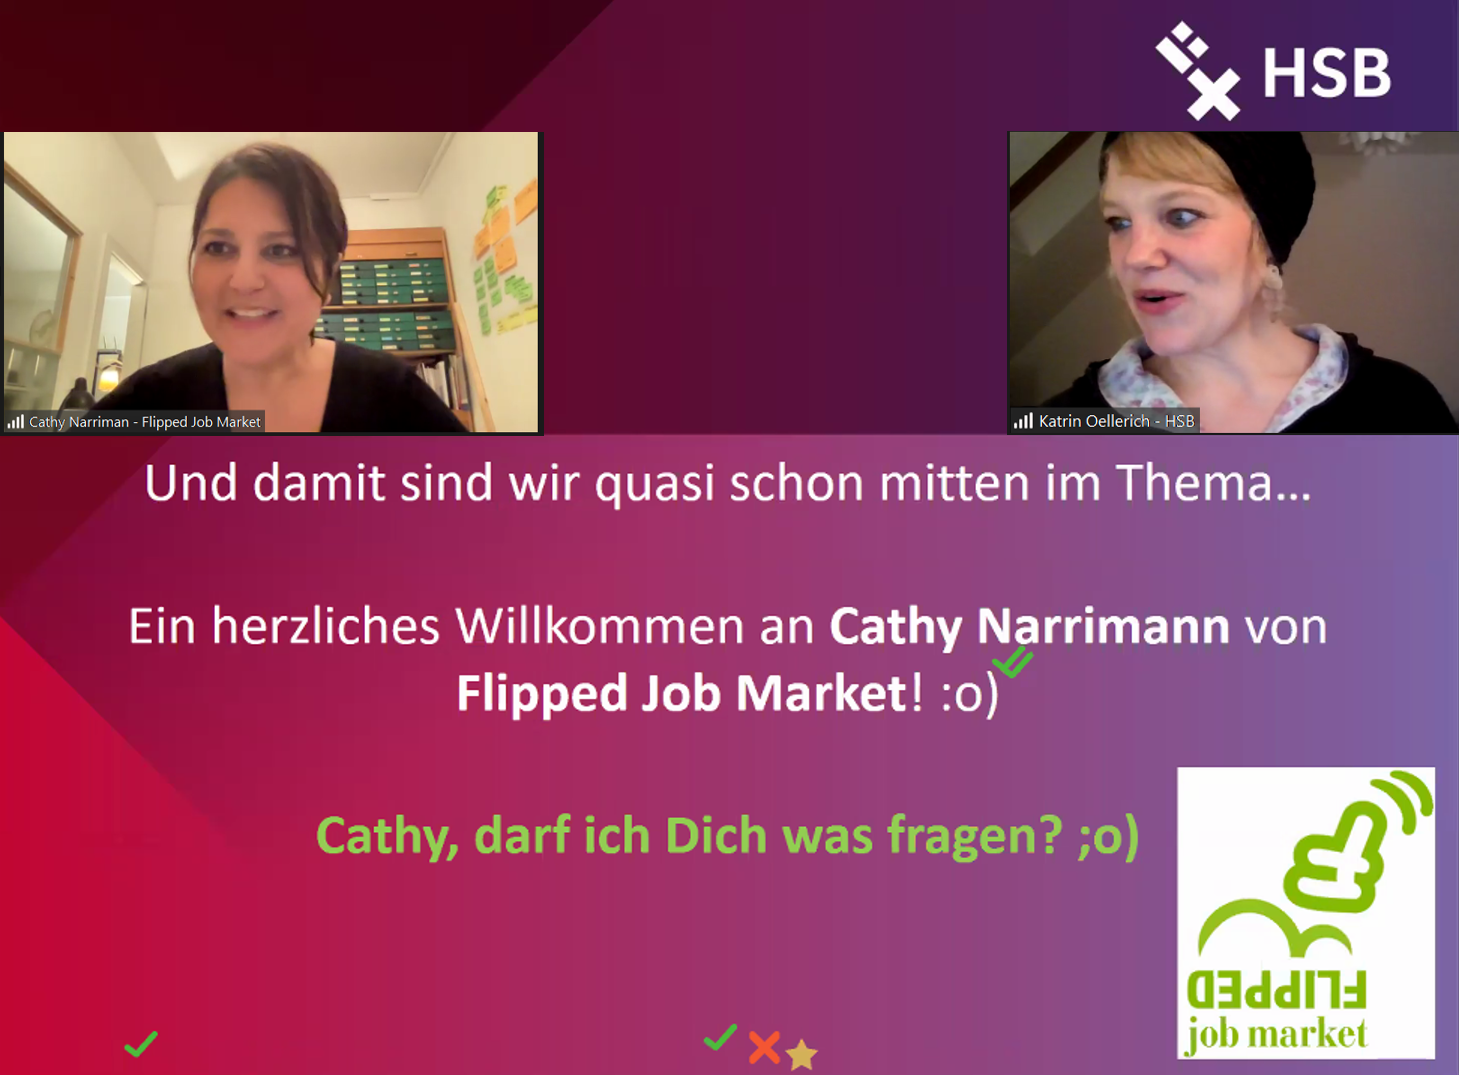 Screenshot von einer online Ringvorlesung, zu sehen sind Katrin Oellerich von der Hochschule Bremen und Gast Cathy Narrimann